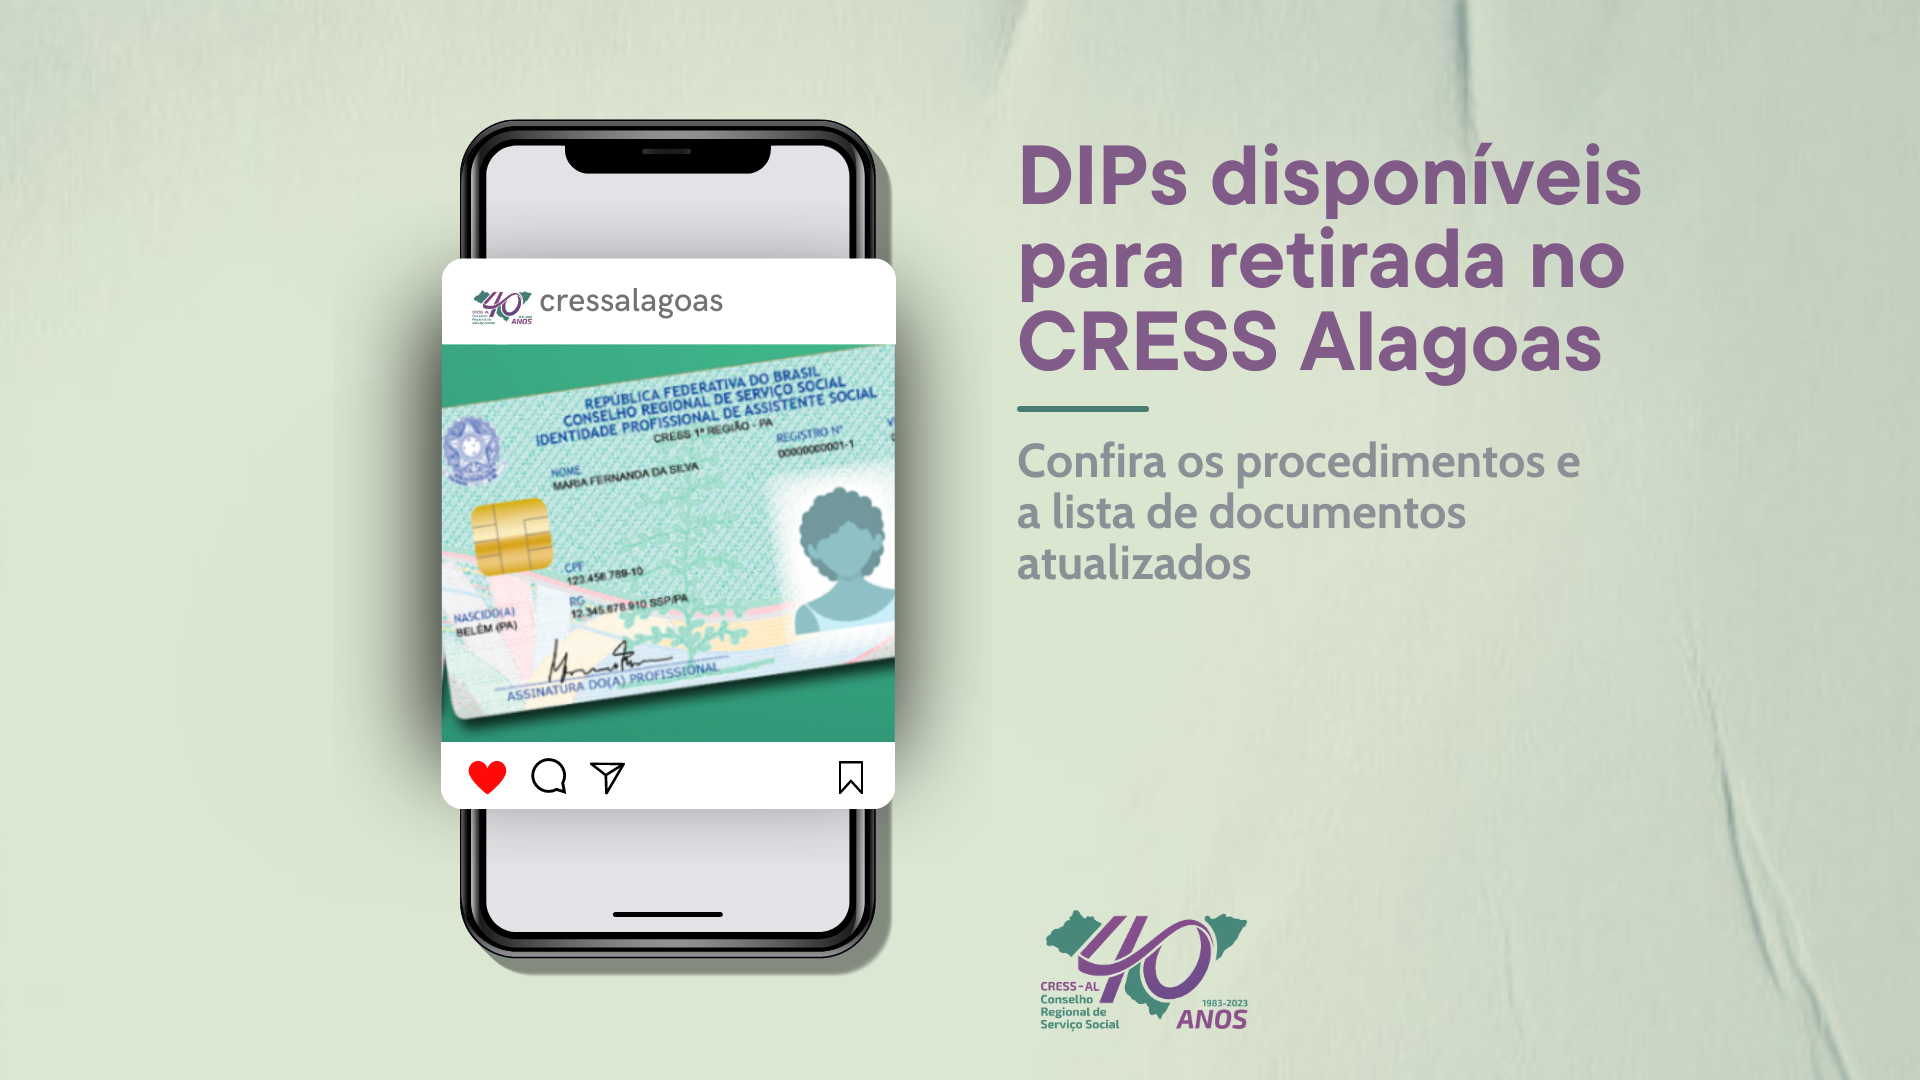 CRESS Alagoas disponibiliza DIPs para retirada na sede do Conselho